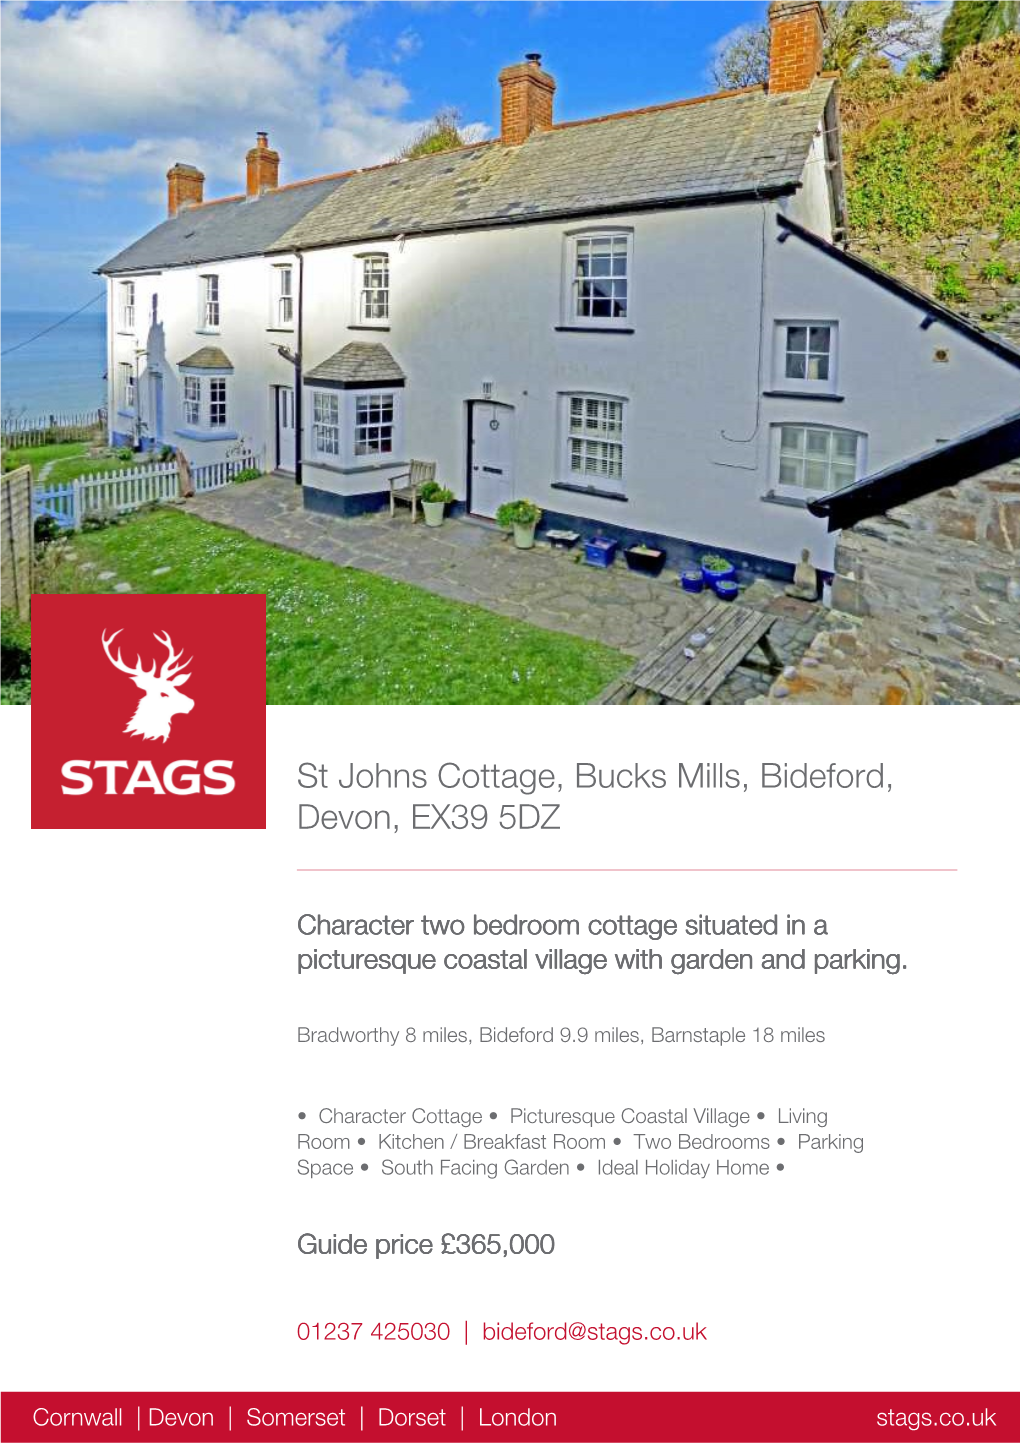 St Johns Cottage, Bucks Mills, Bideford, Devon, EX39 5DZ